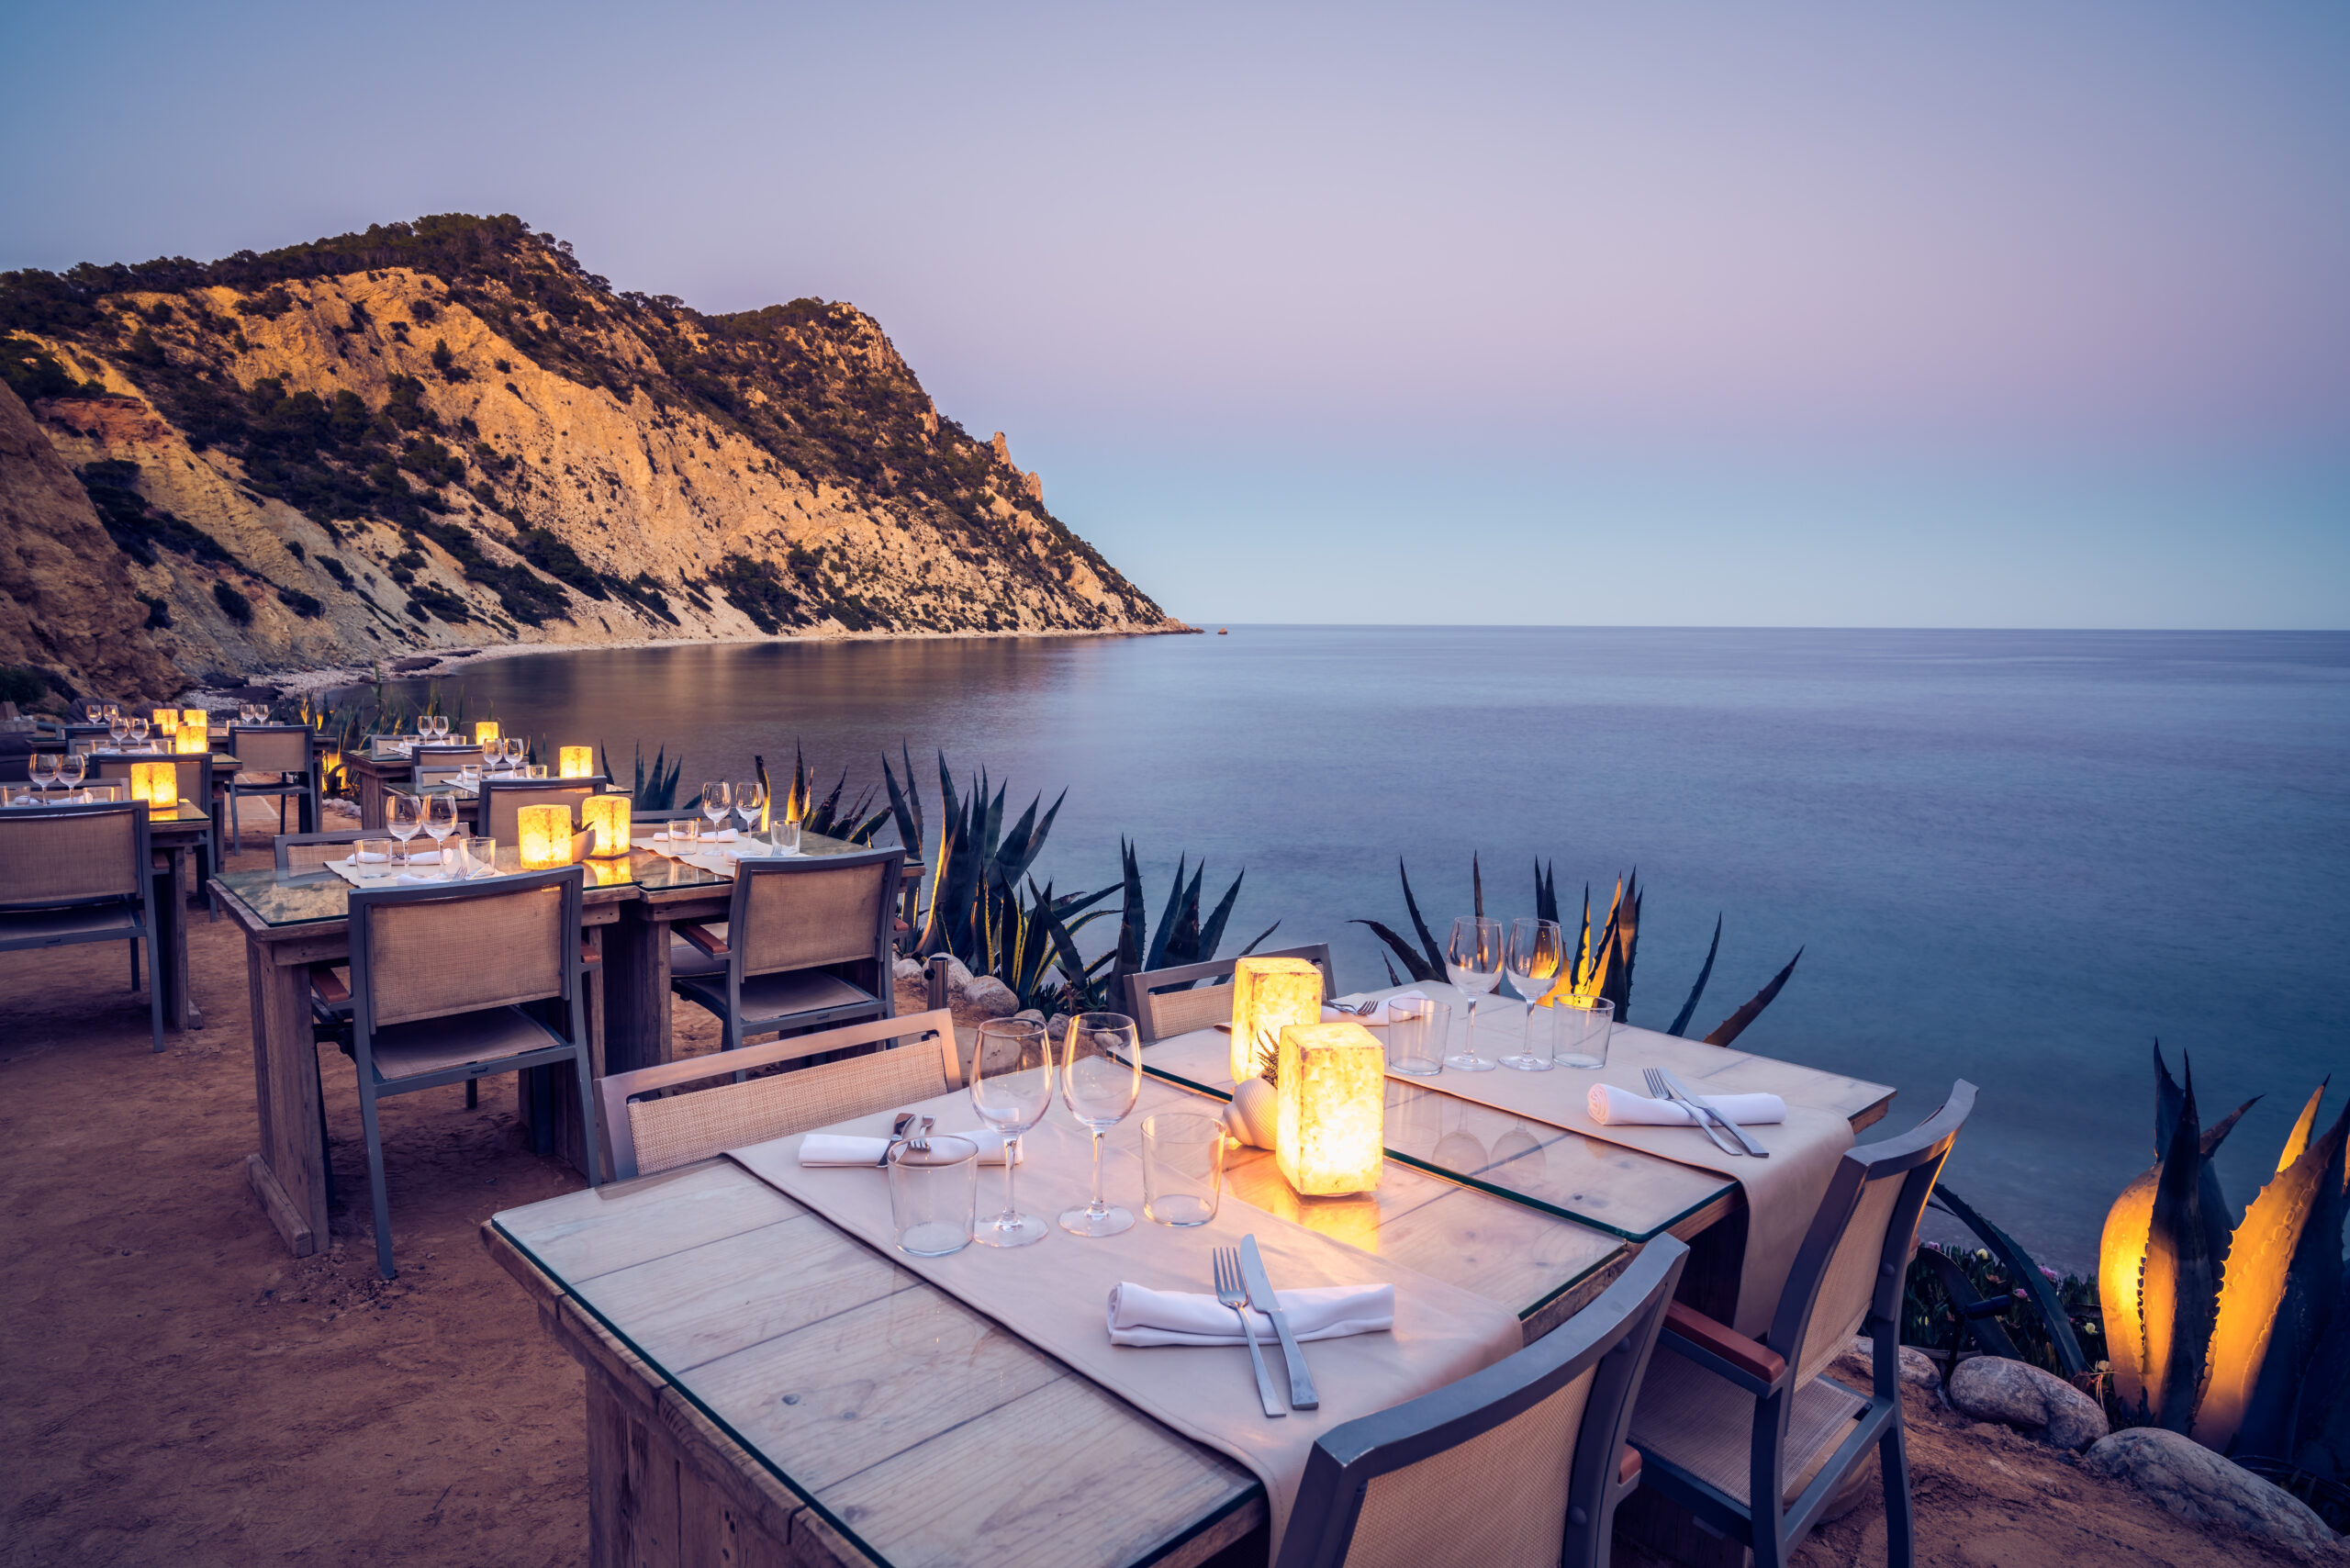 Best Romantic Restaurants in Ibiza